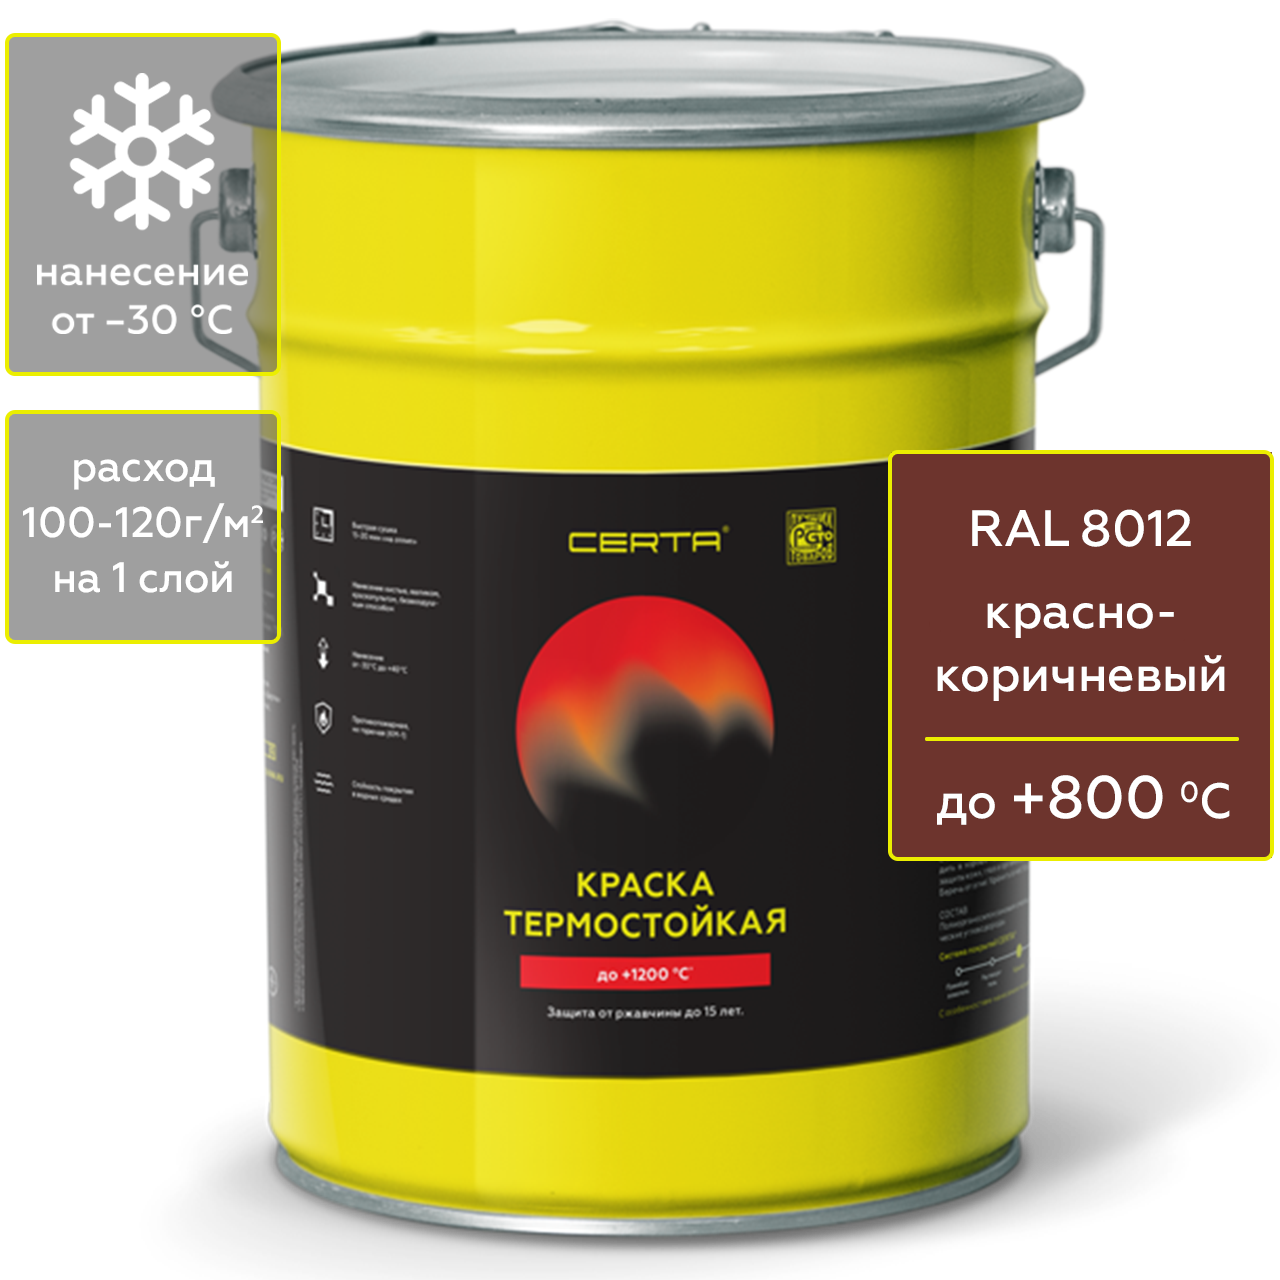 Краска Certa для печей, мангалов и радиаторов термостойкая до 800°С красно-коричневый 4 кг герметик для печей penosil